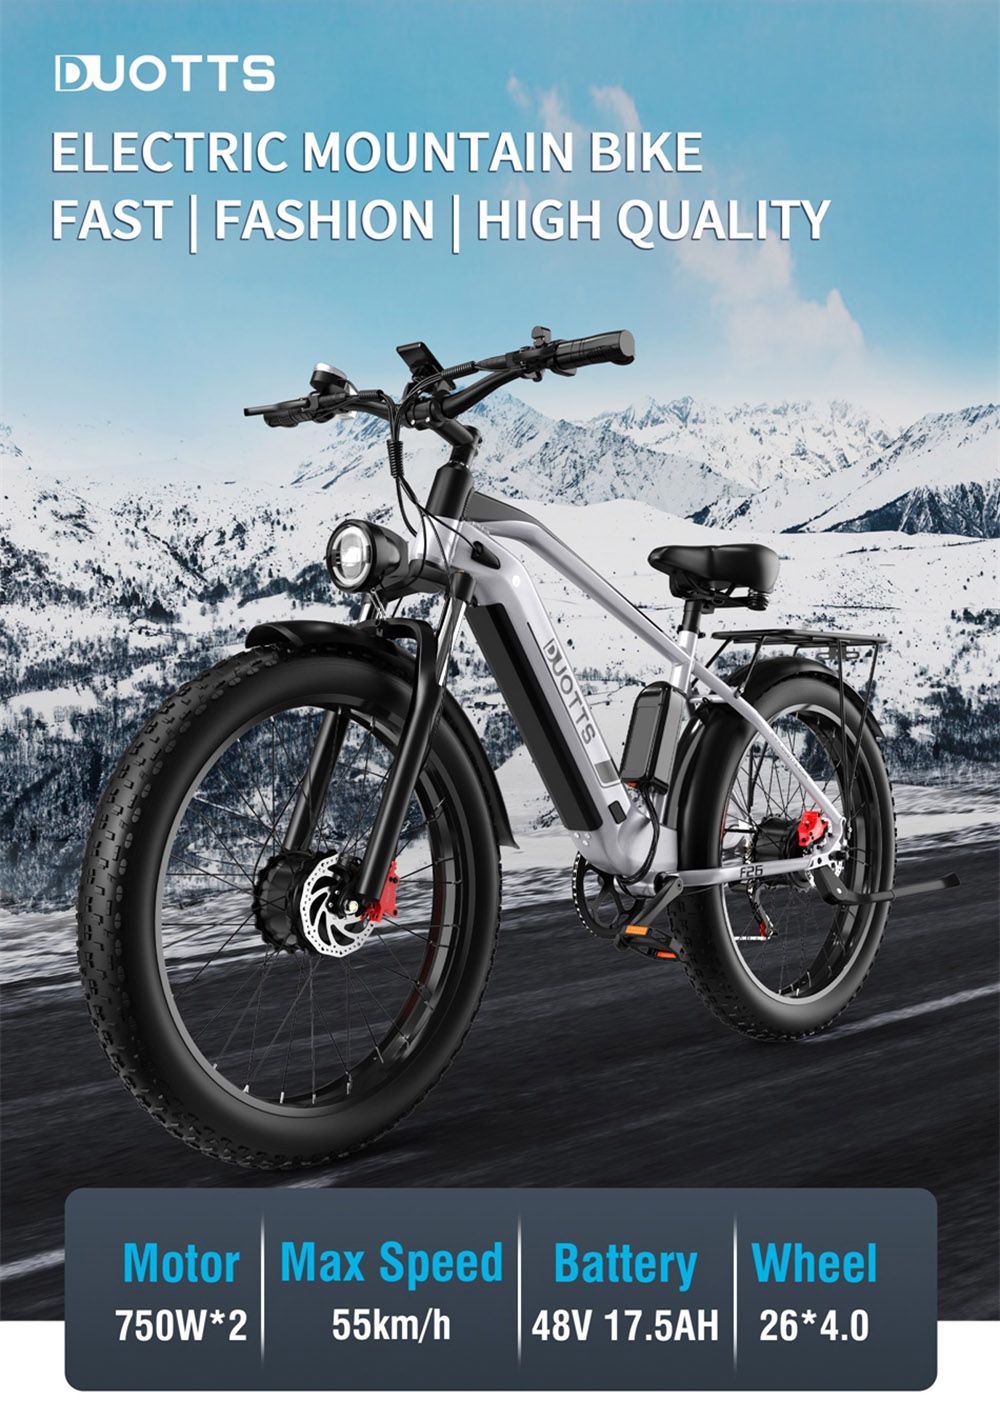 26 Inch Electric Bike DUOTTS F26 55Km/h 17.5 Ah 750W*2 Two Motors Silver